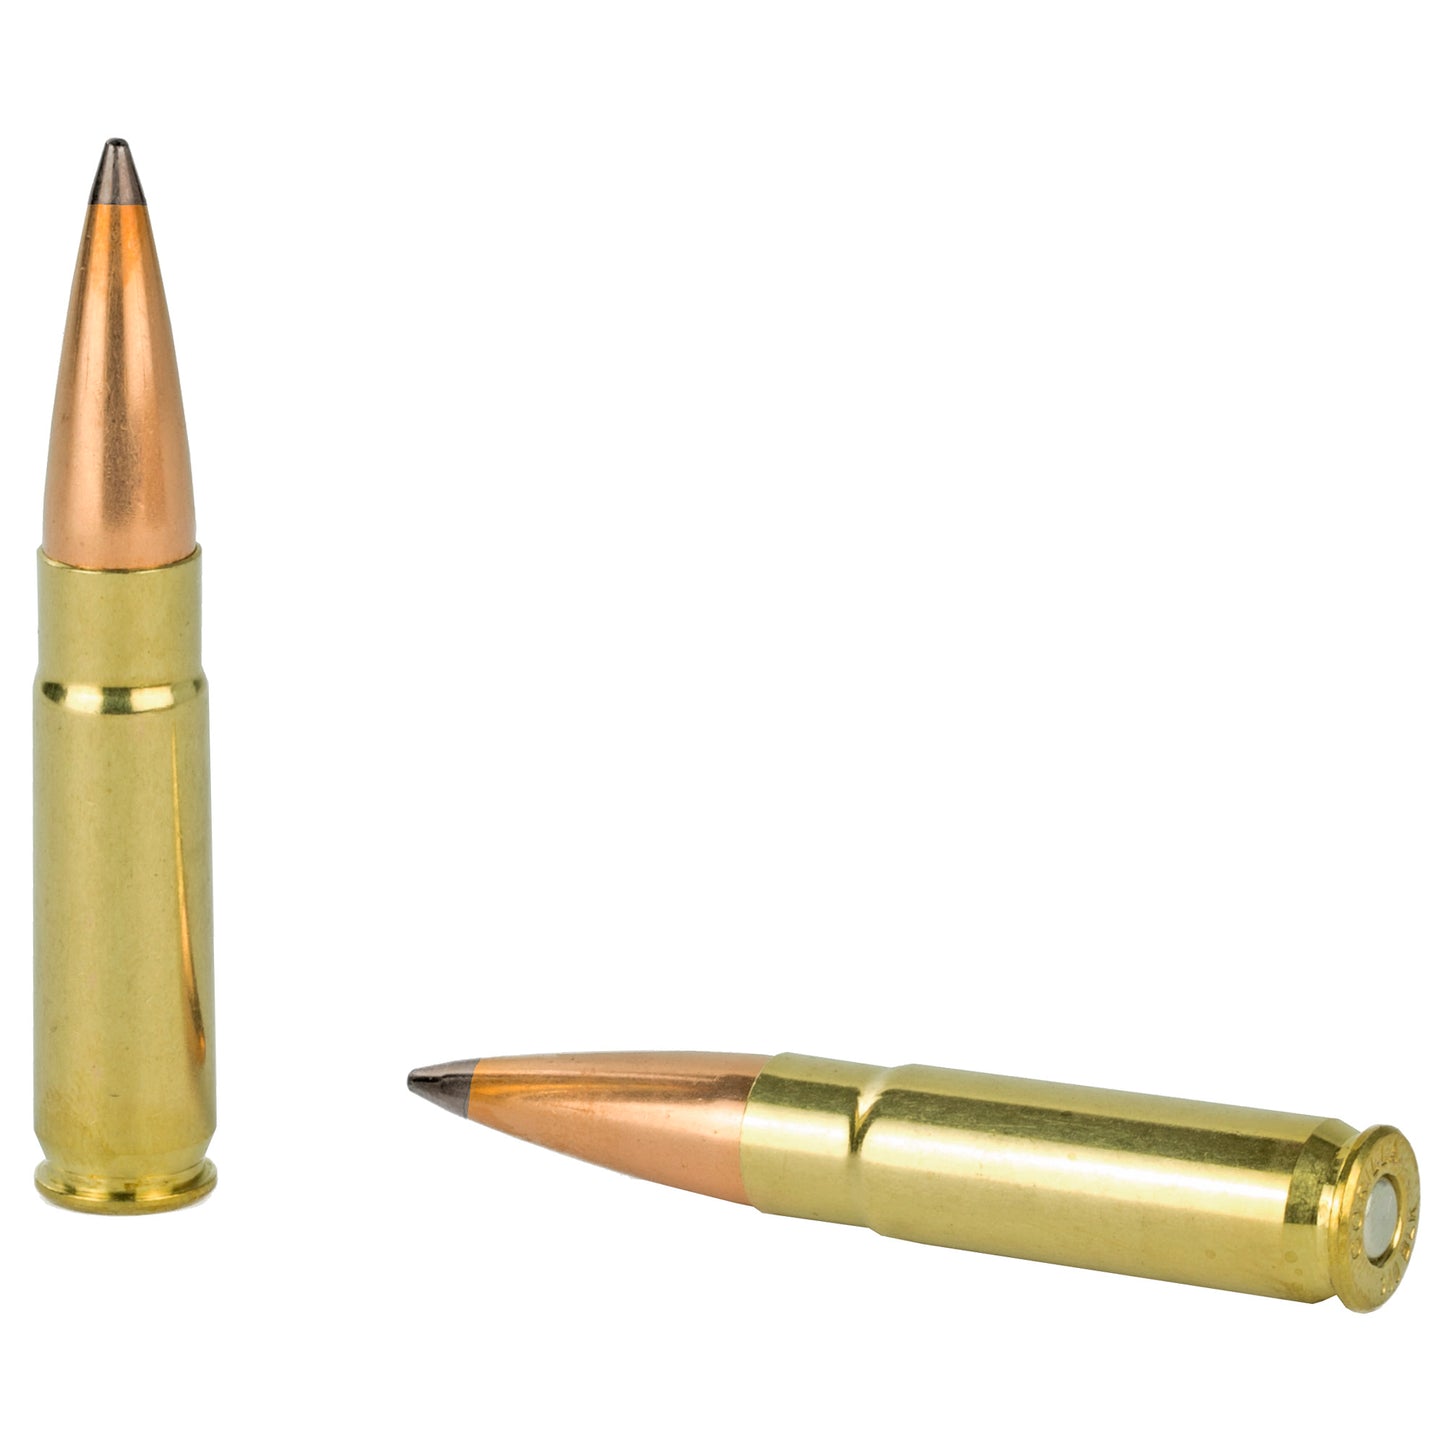 DoubleTap Ammunition, Colt Defense, 300 Blackout, 125 Grain, Solid Copper Hollow Point, 20 Round Box